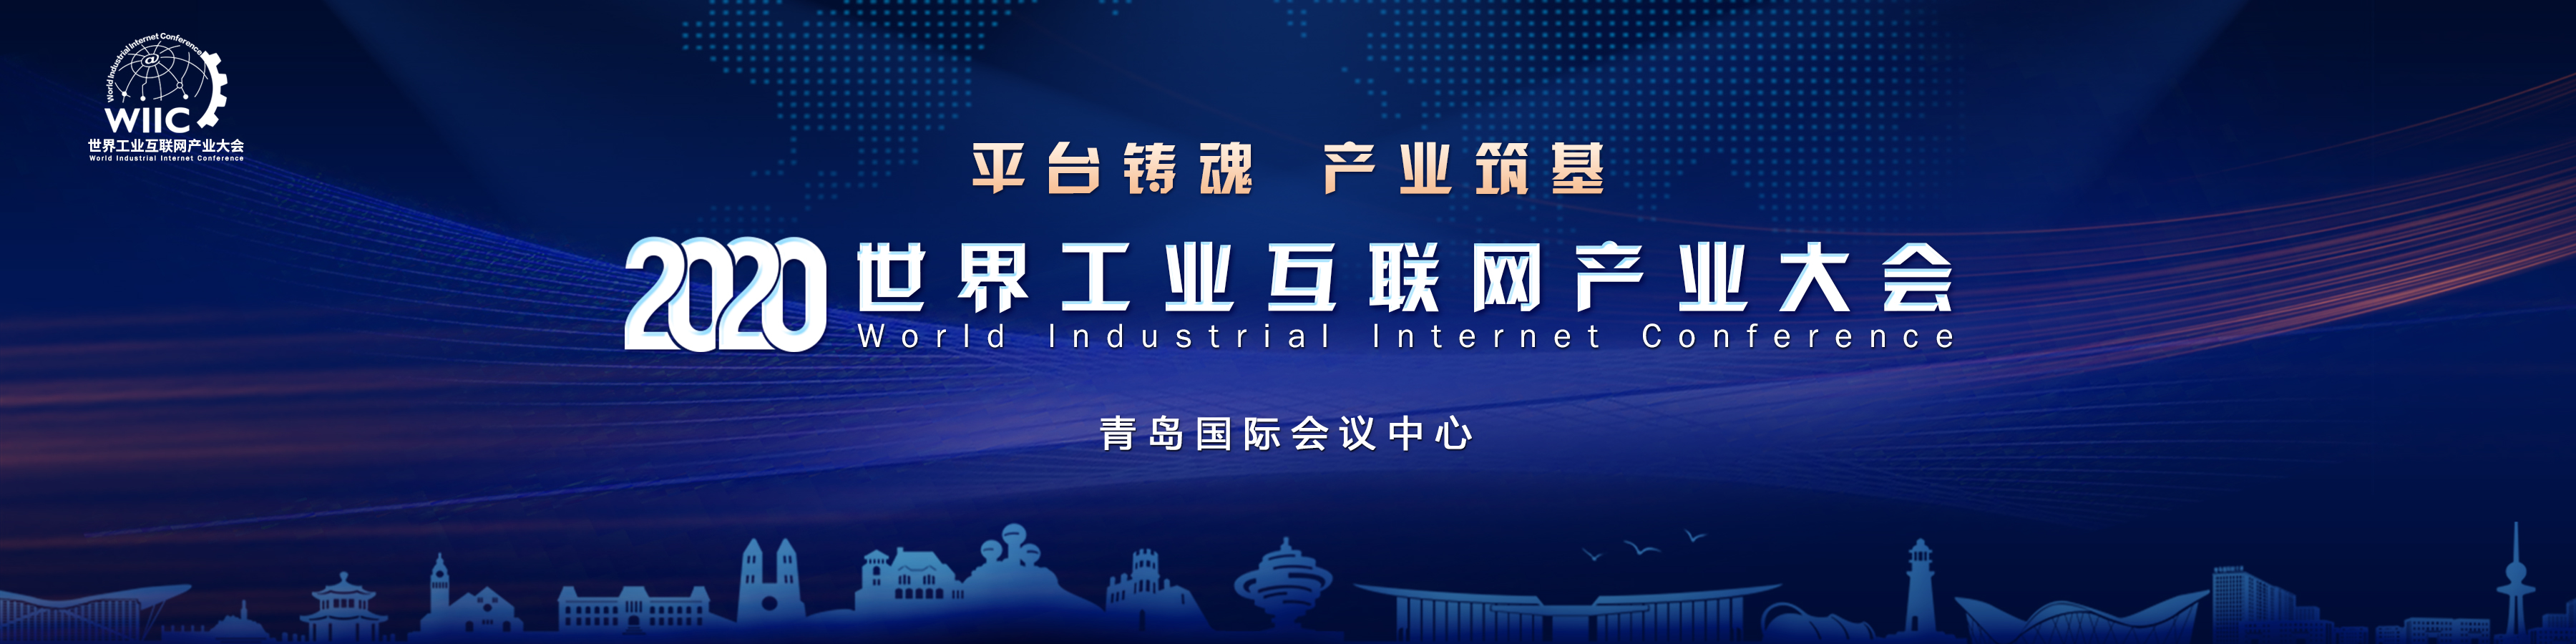 鼎故革新：齐聚2020世界工业互联网产业大会，释放青岛工业互联网力量